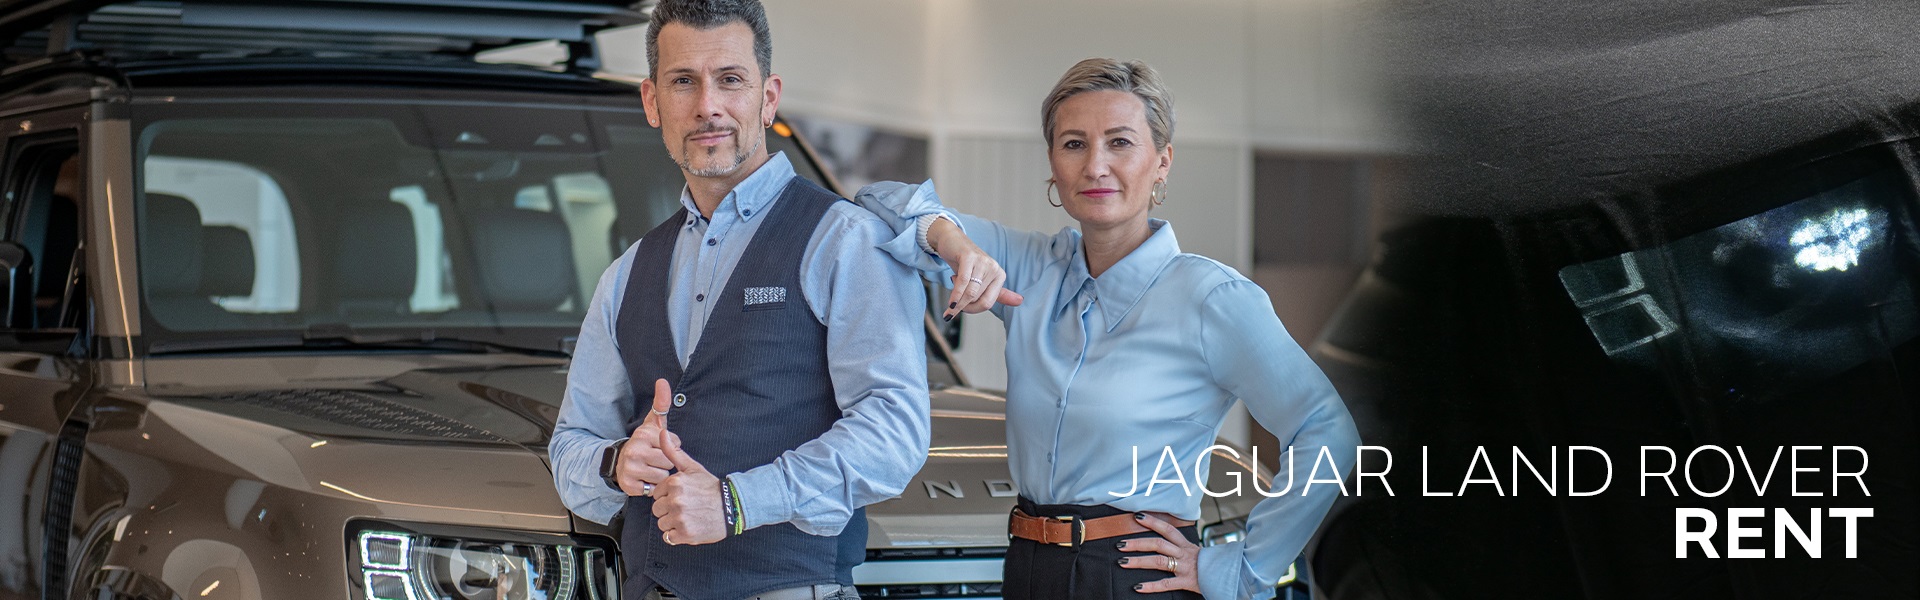 Jaguar und Land Rover in München mieten